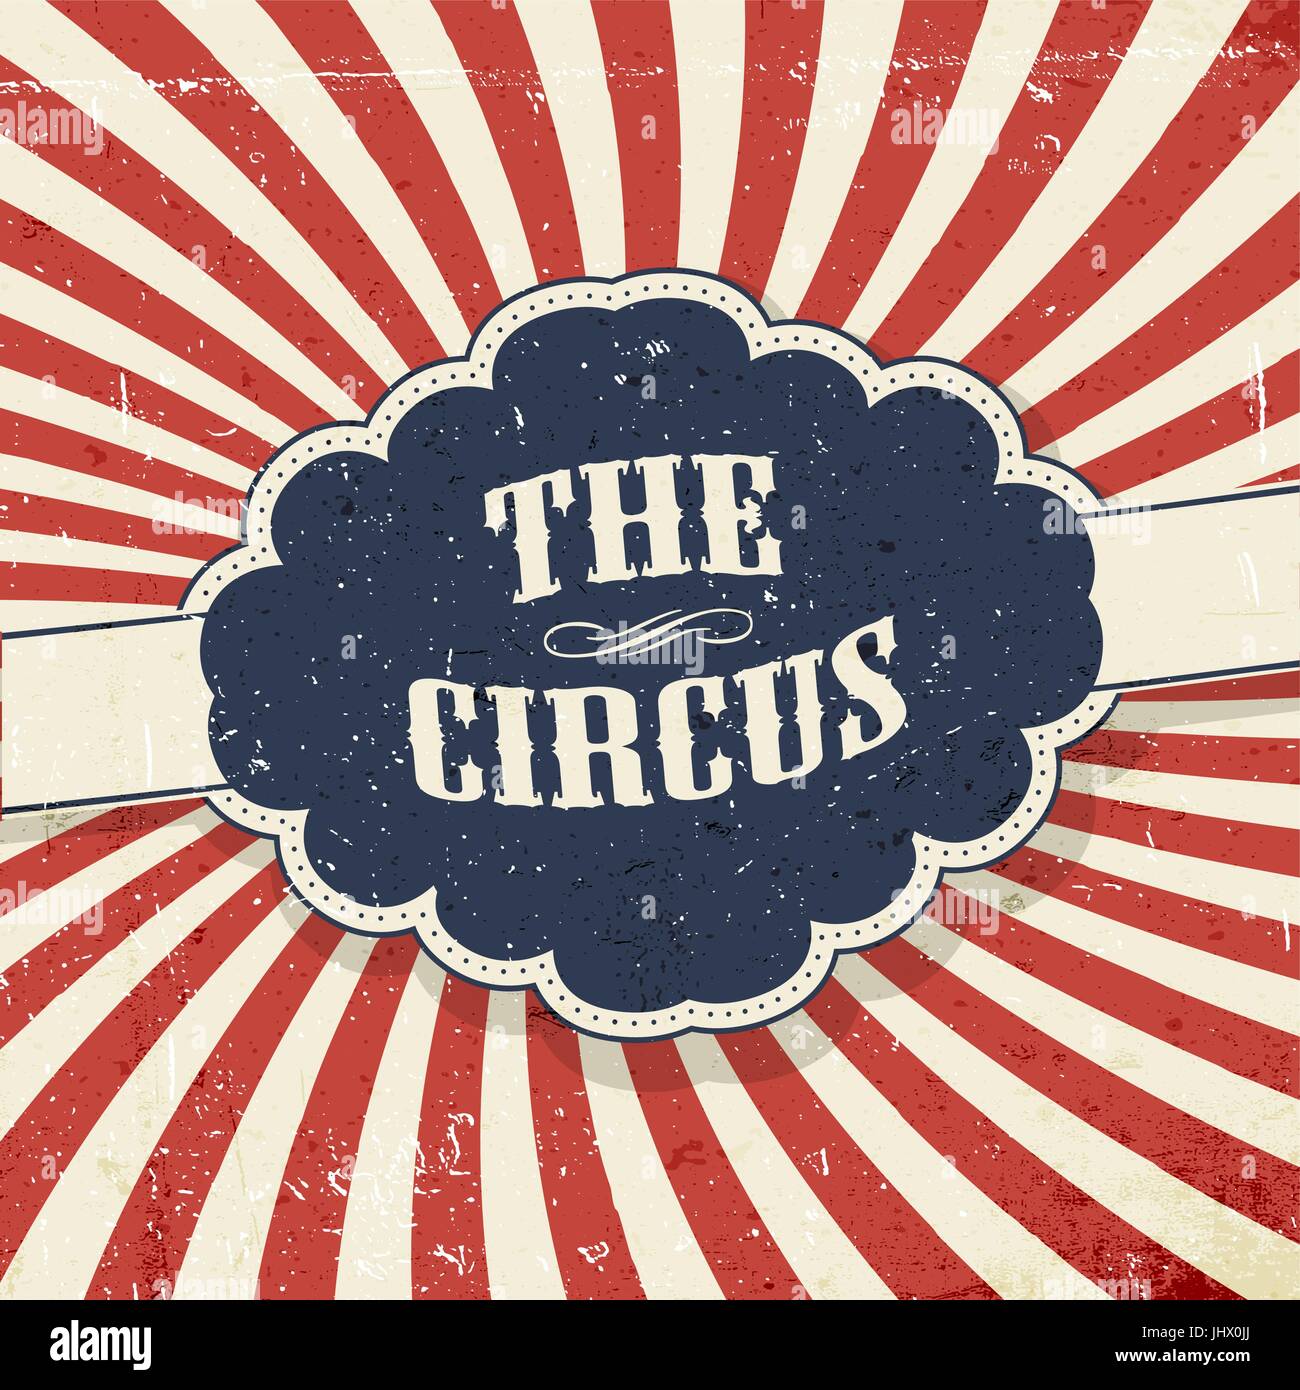 Vintage circus resumen antecedentes. Etiqueta retro con el texto "El Circo" Ilustración del Vector